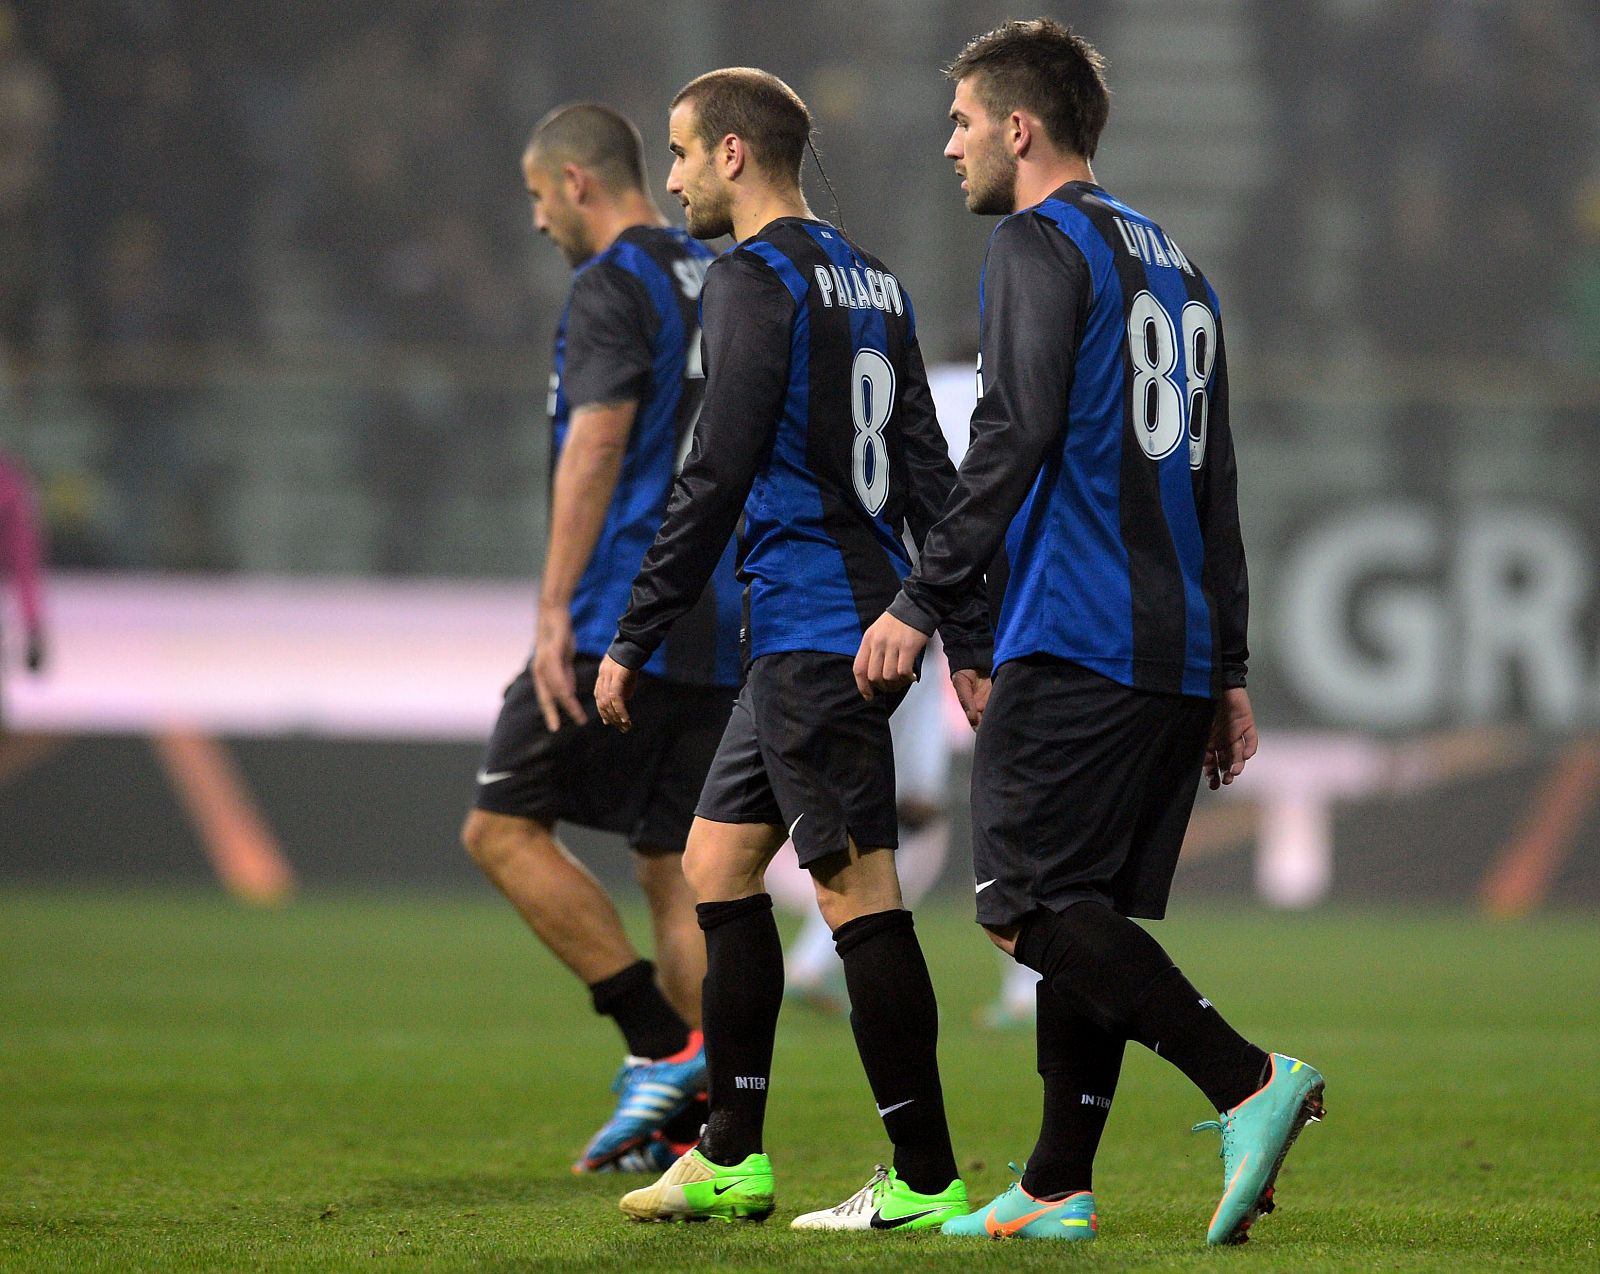 Jugadores del Inter de Milán abandonan cabizbajos la cancha del Parma